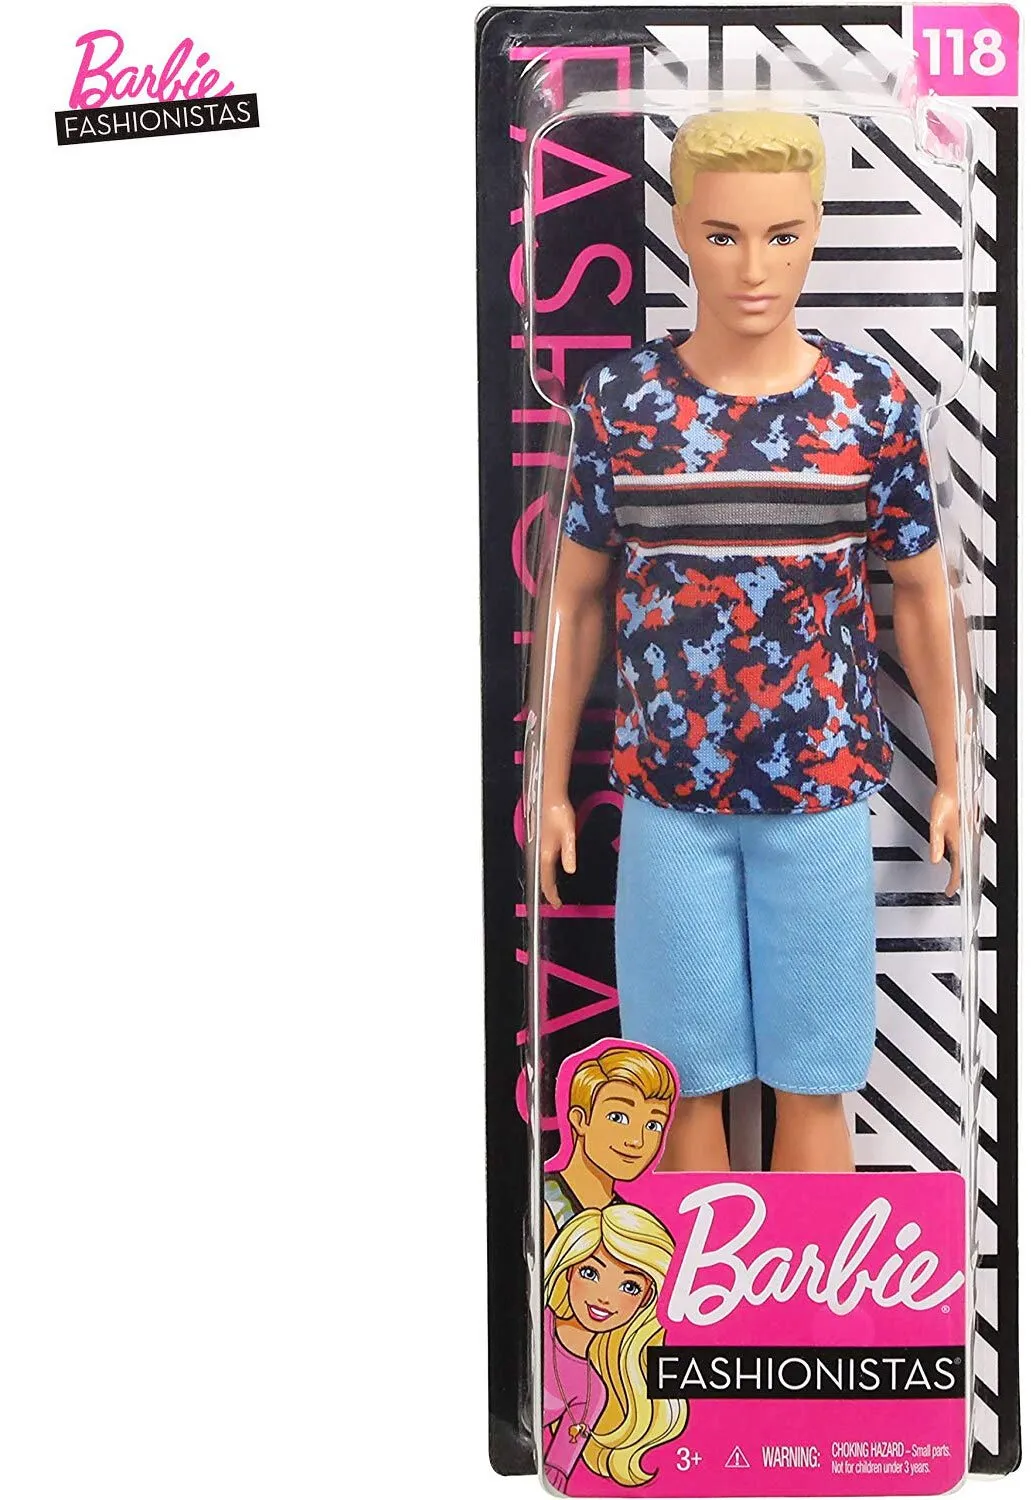  Кукла Barbie/Барби - Fashionistats, Кен  2